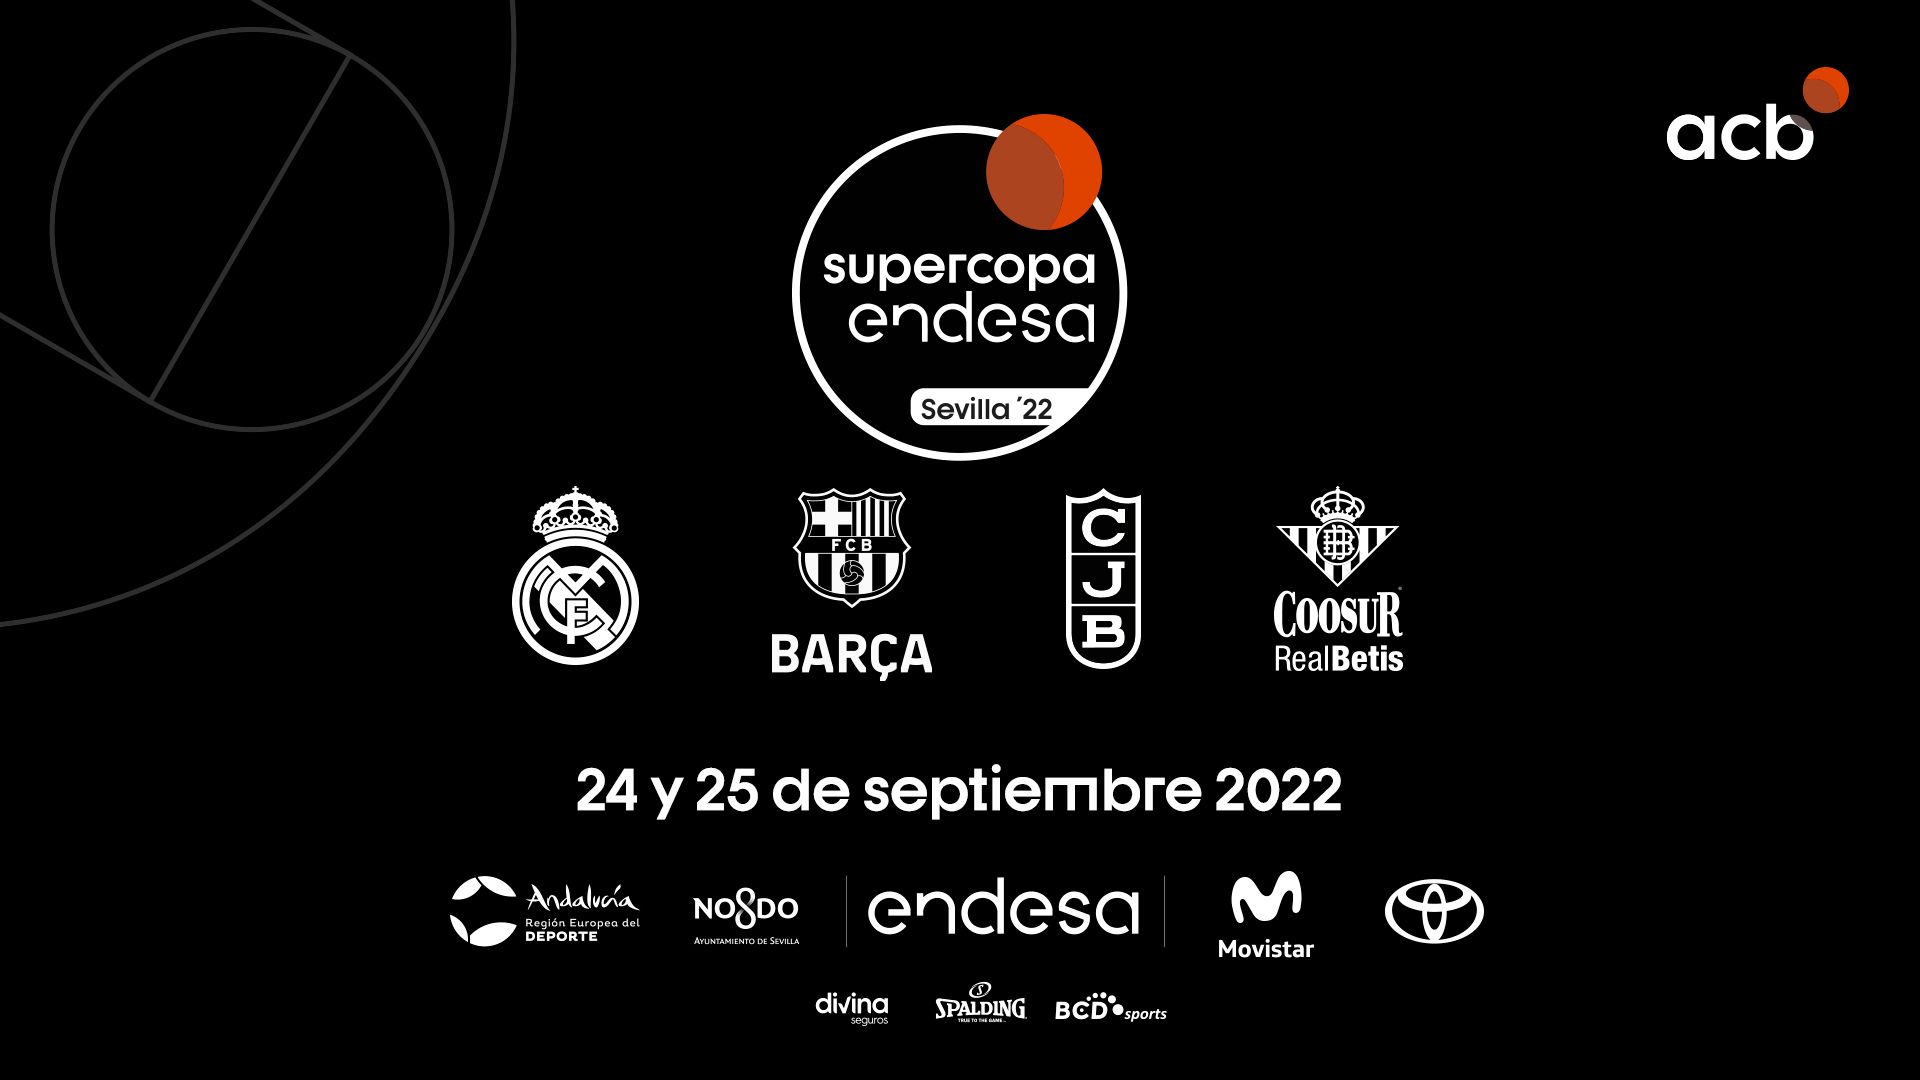 Supercopa Endesa 2022